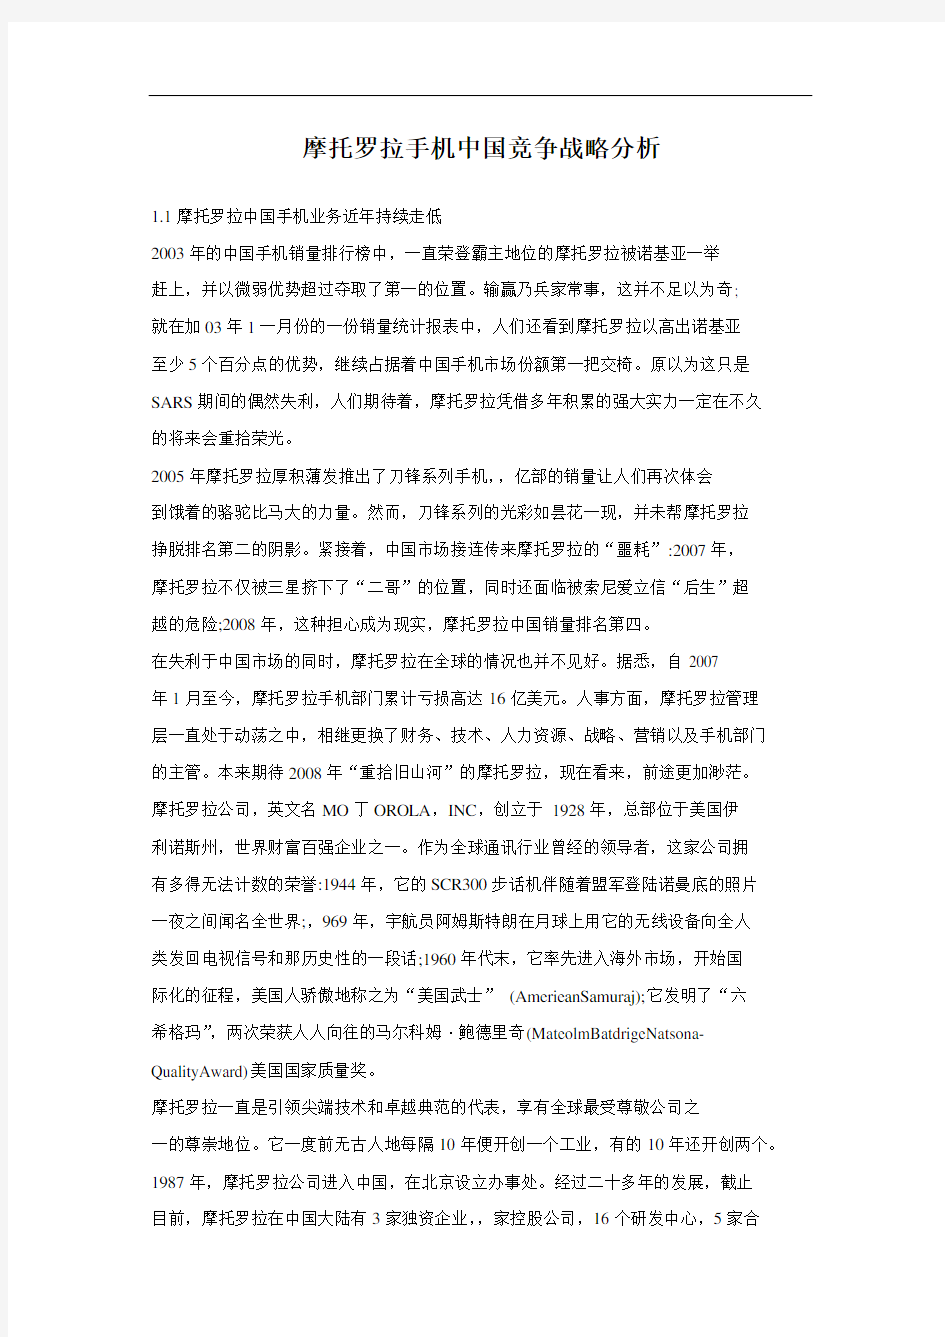 摩托罗拉手机中国竞争战略分析